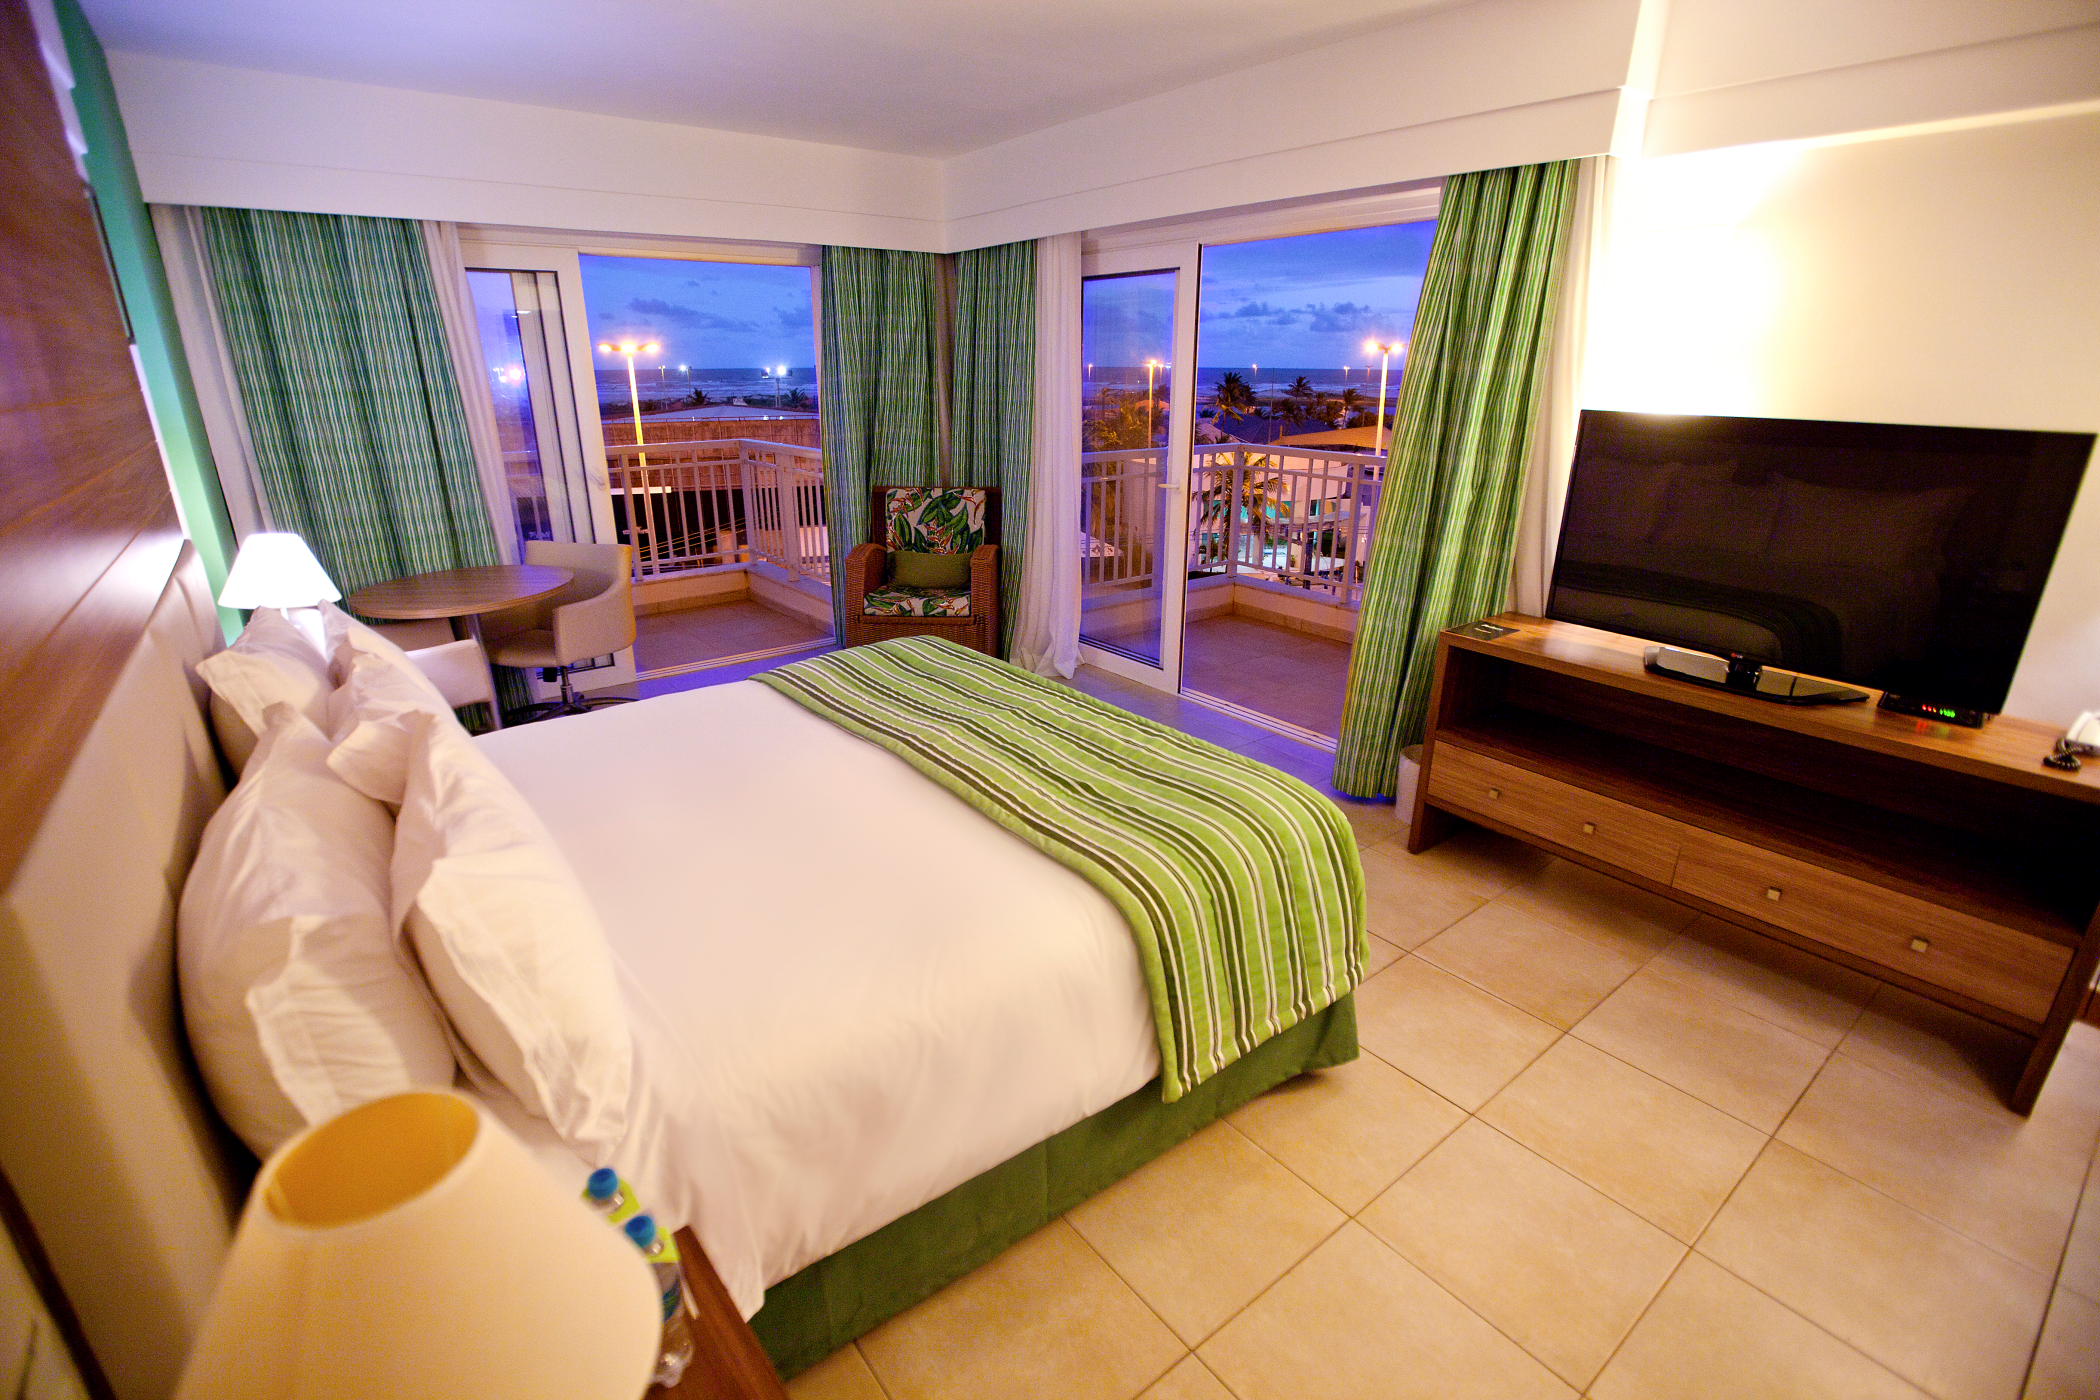 Hotel Radisson Aracaju, orla de Aracaju, Hospedagem, Foto Márcio Dantas, Sergipe, destino, turismo